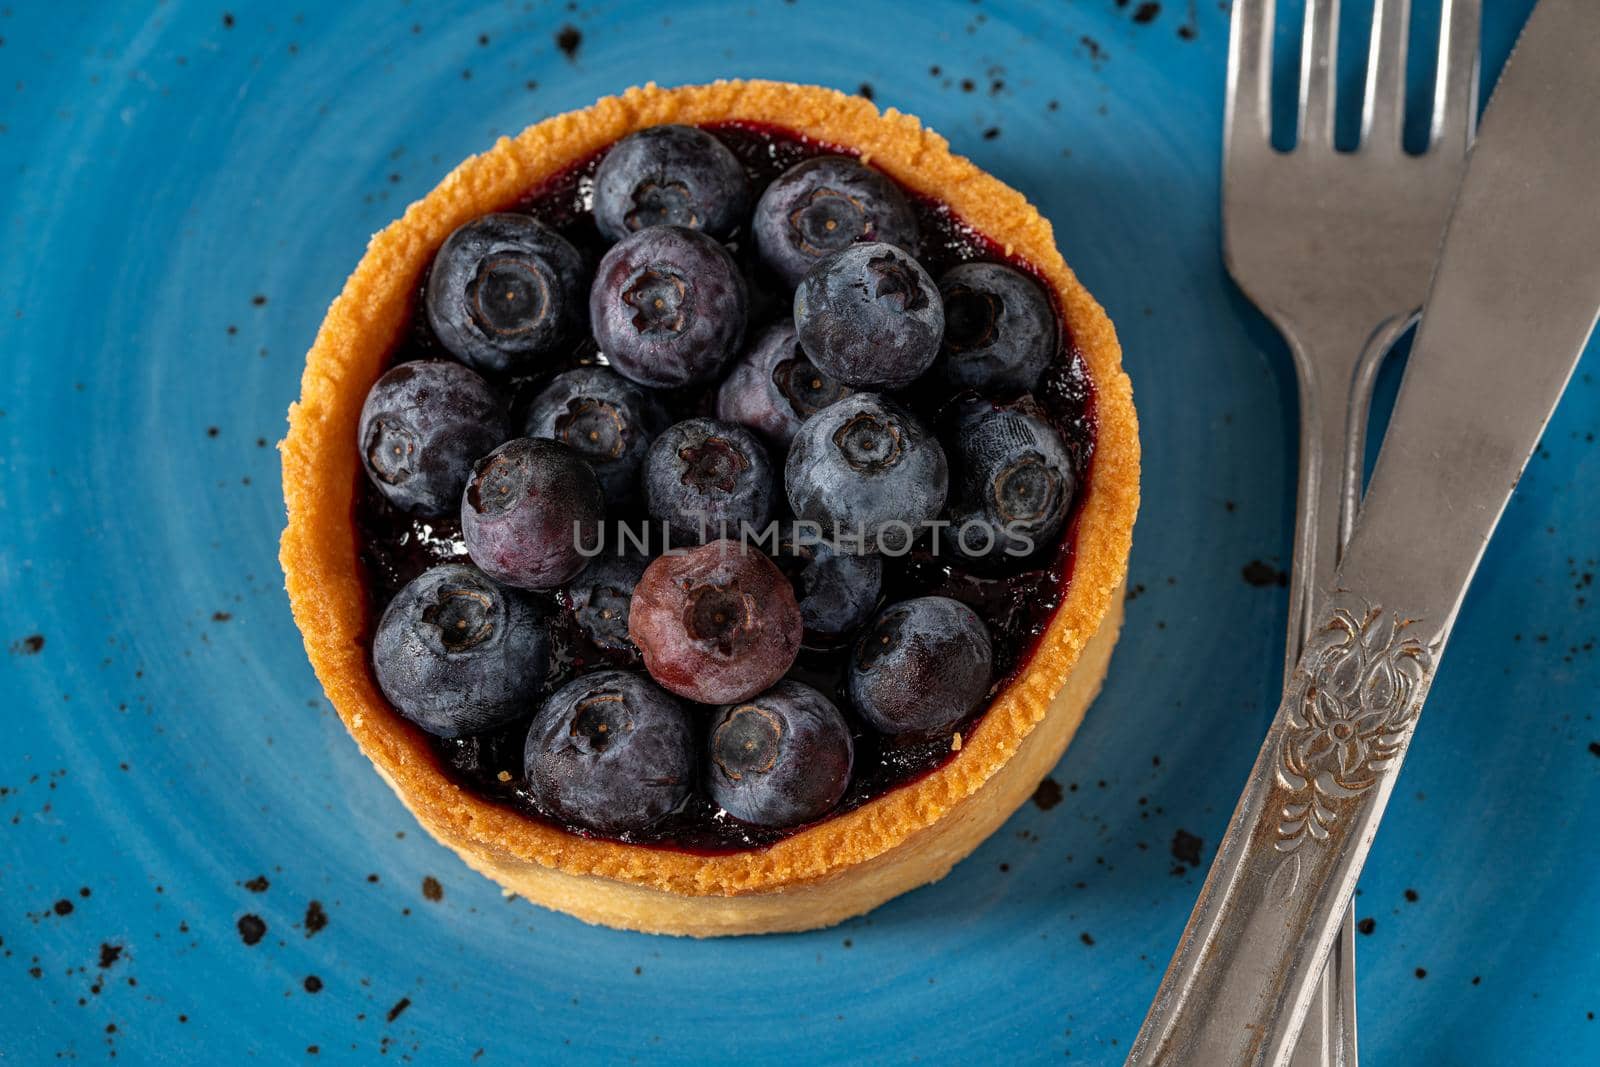 Freshly baked blueberry tart on a blue porcelain plate